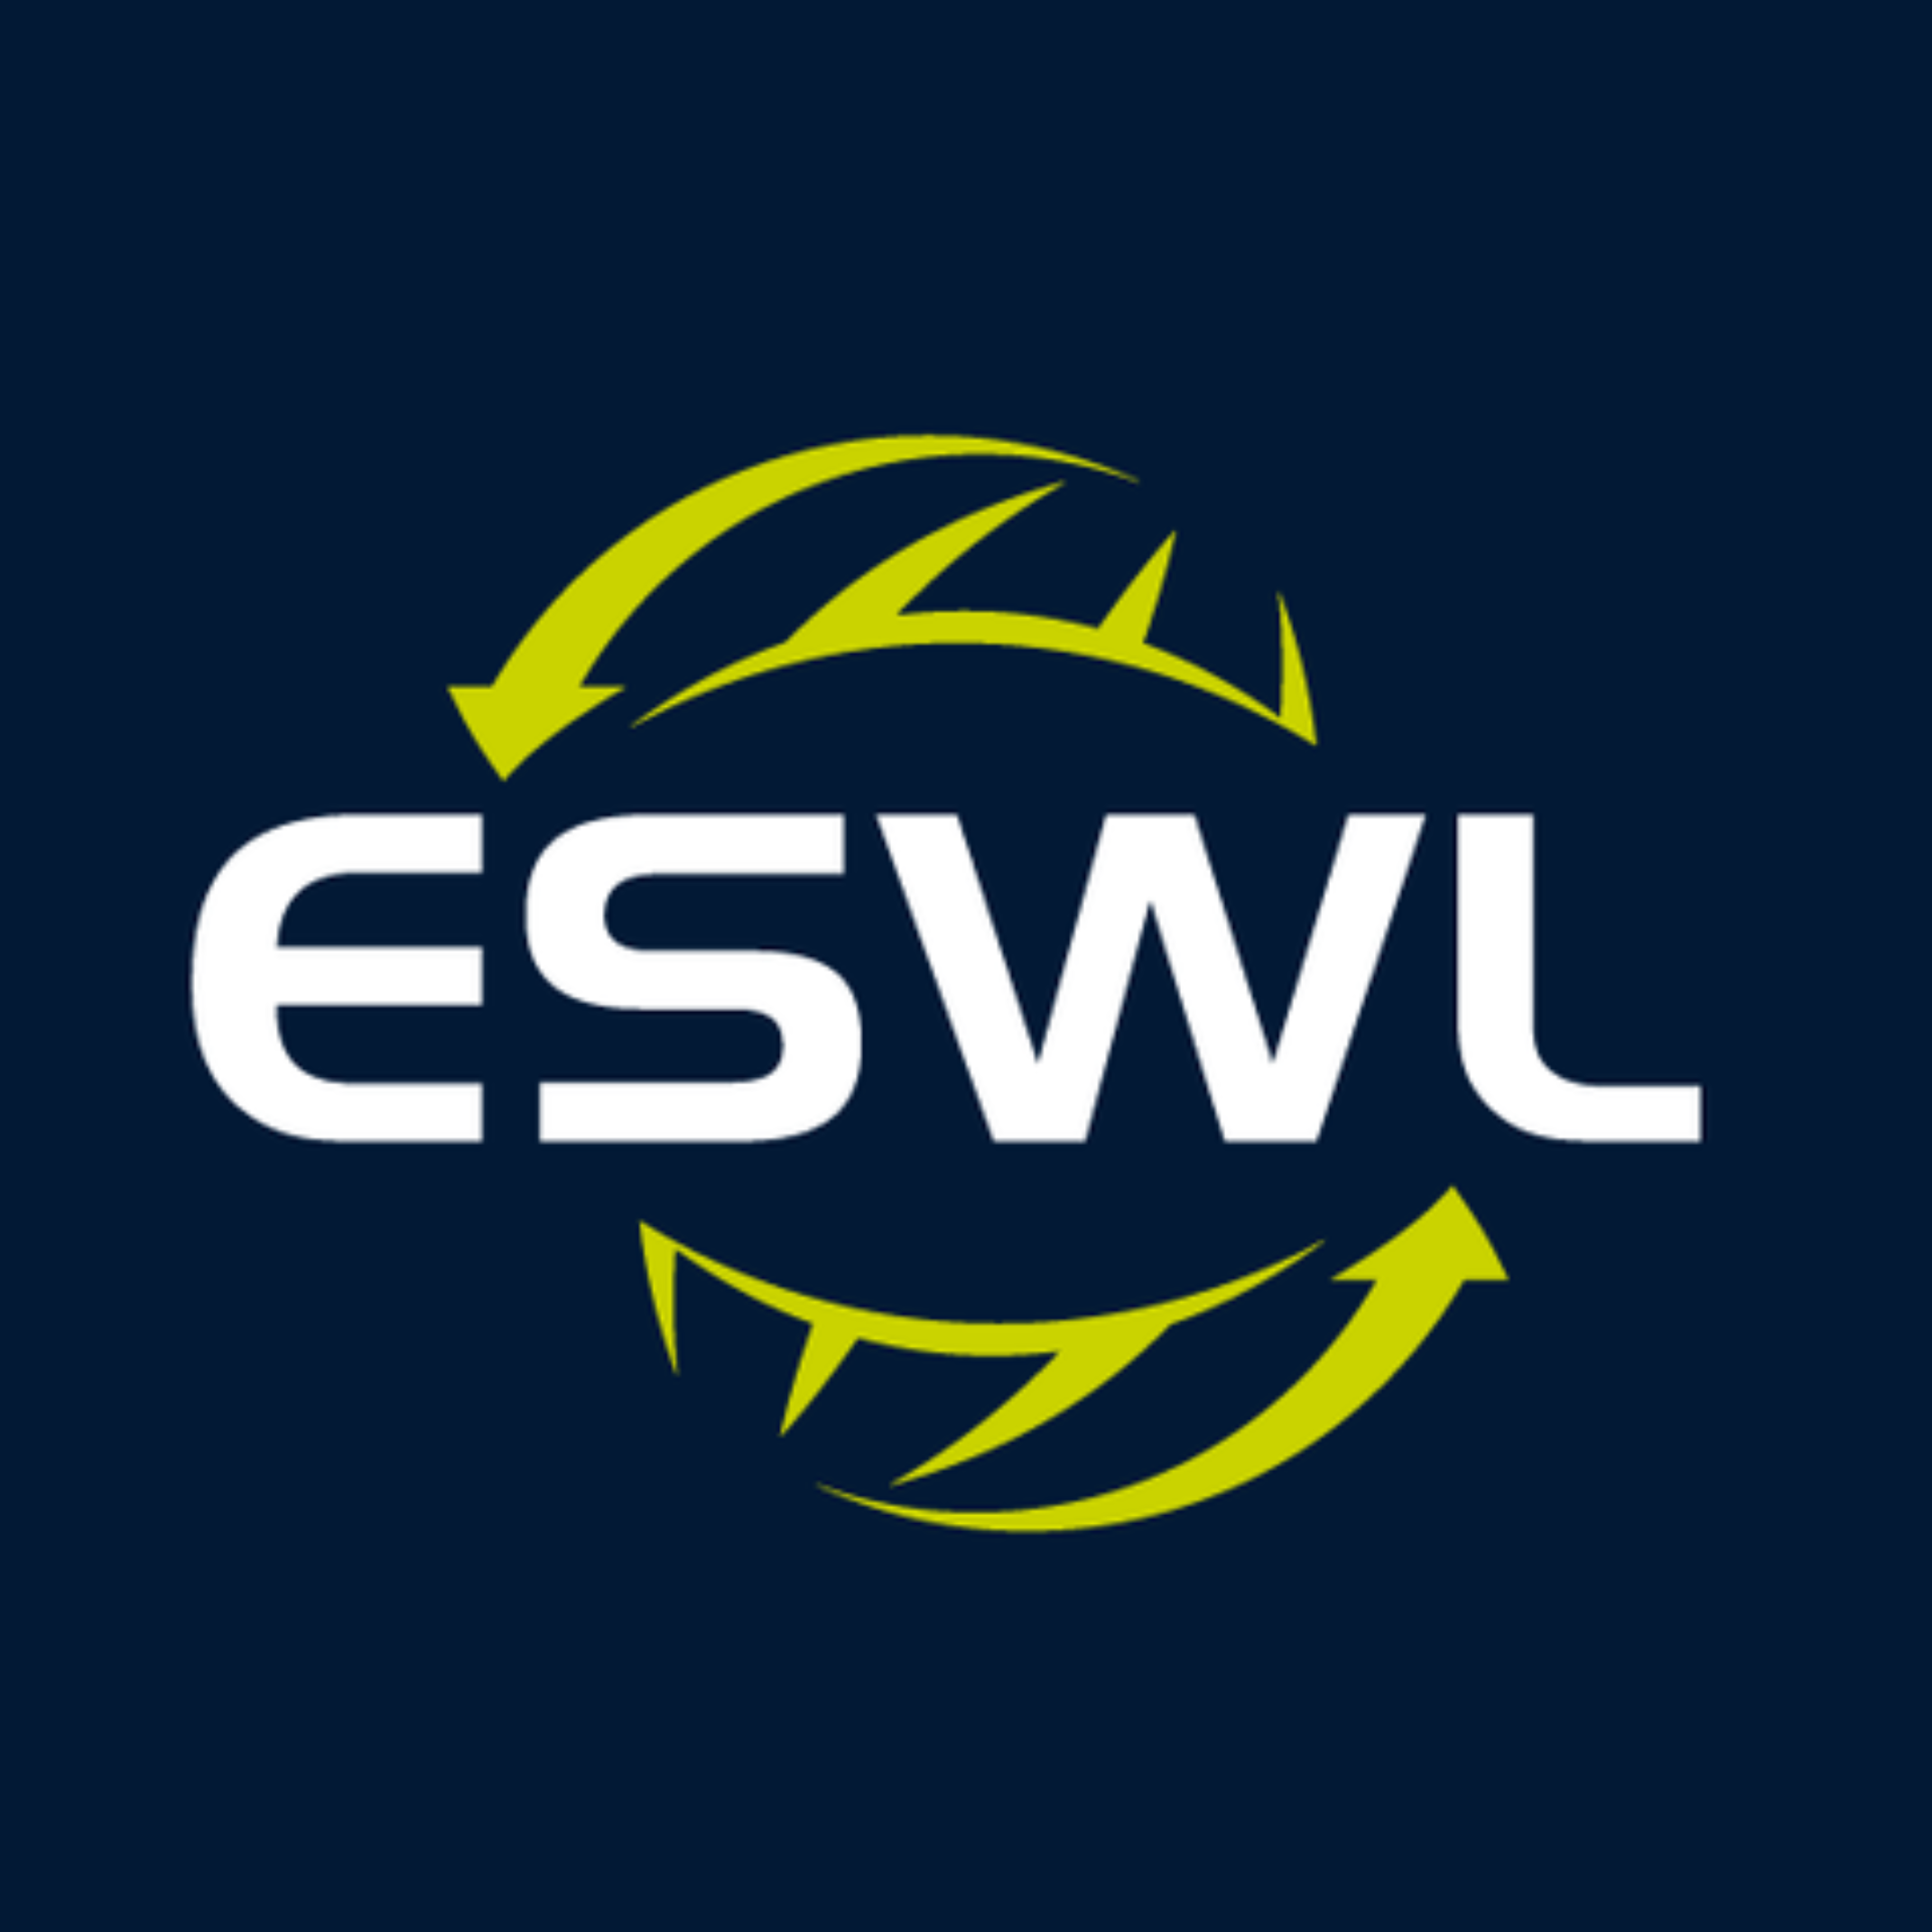 Client Testimonial - ESWL